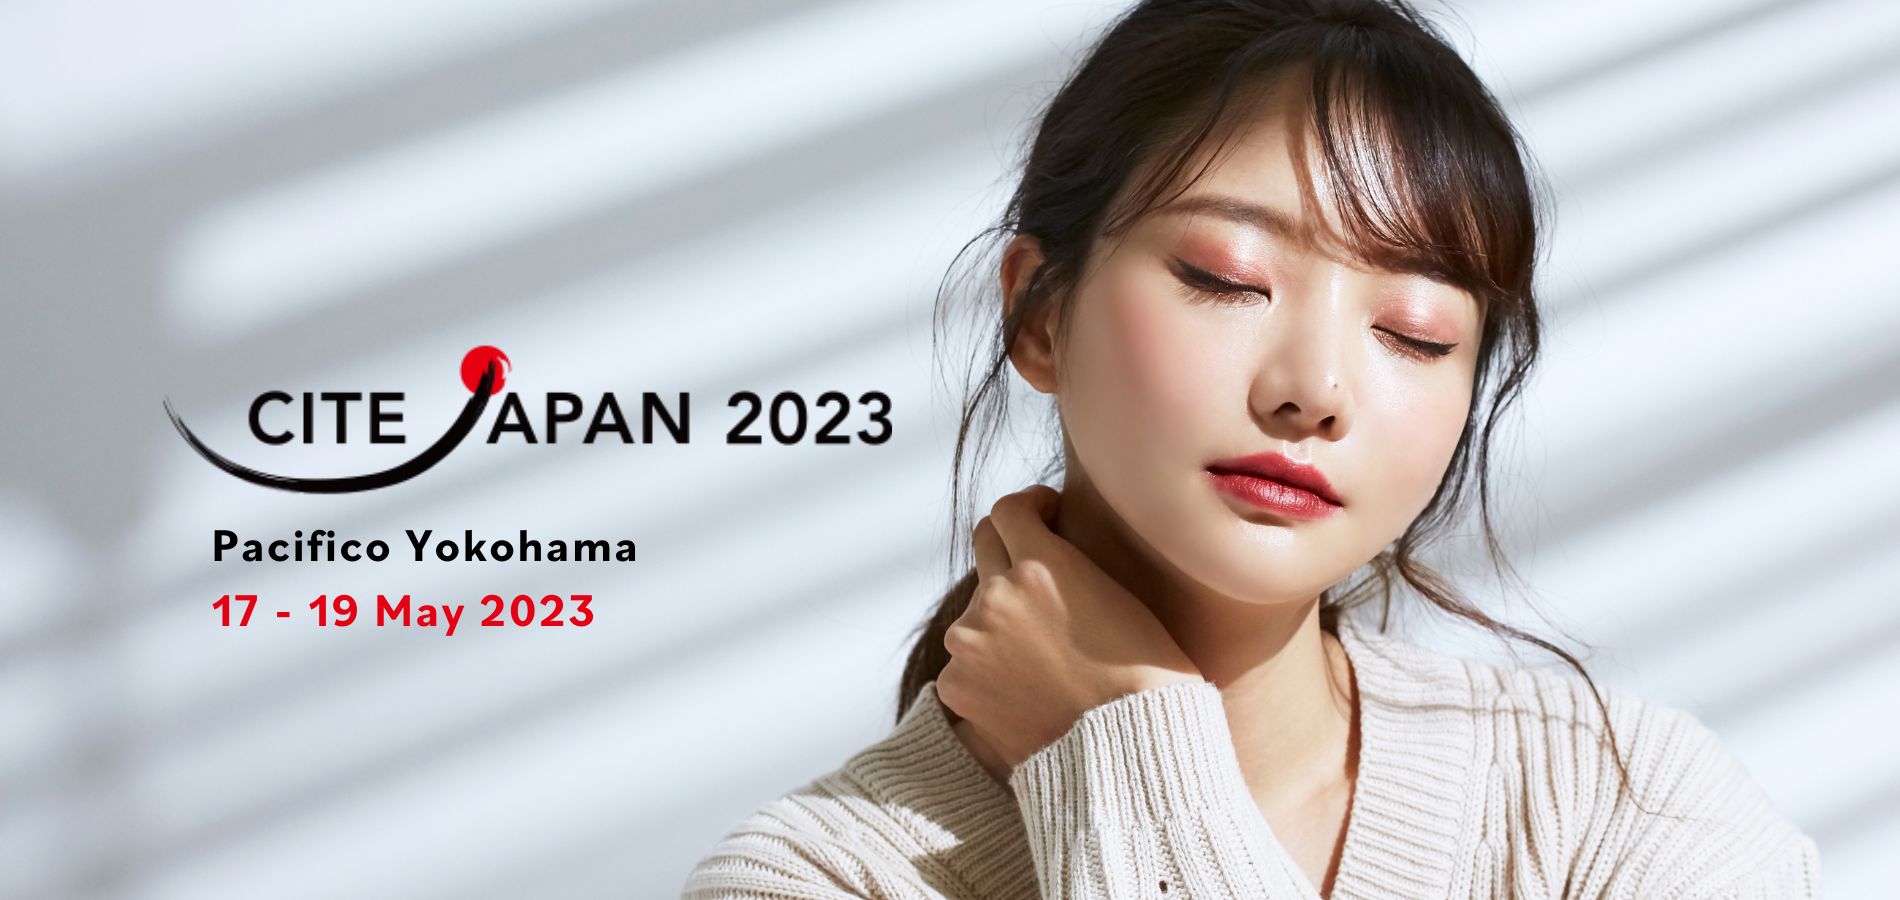 Imagen destacada del sitio web de CITE Japan 2023